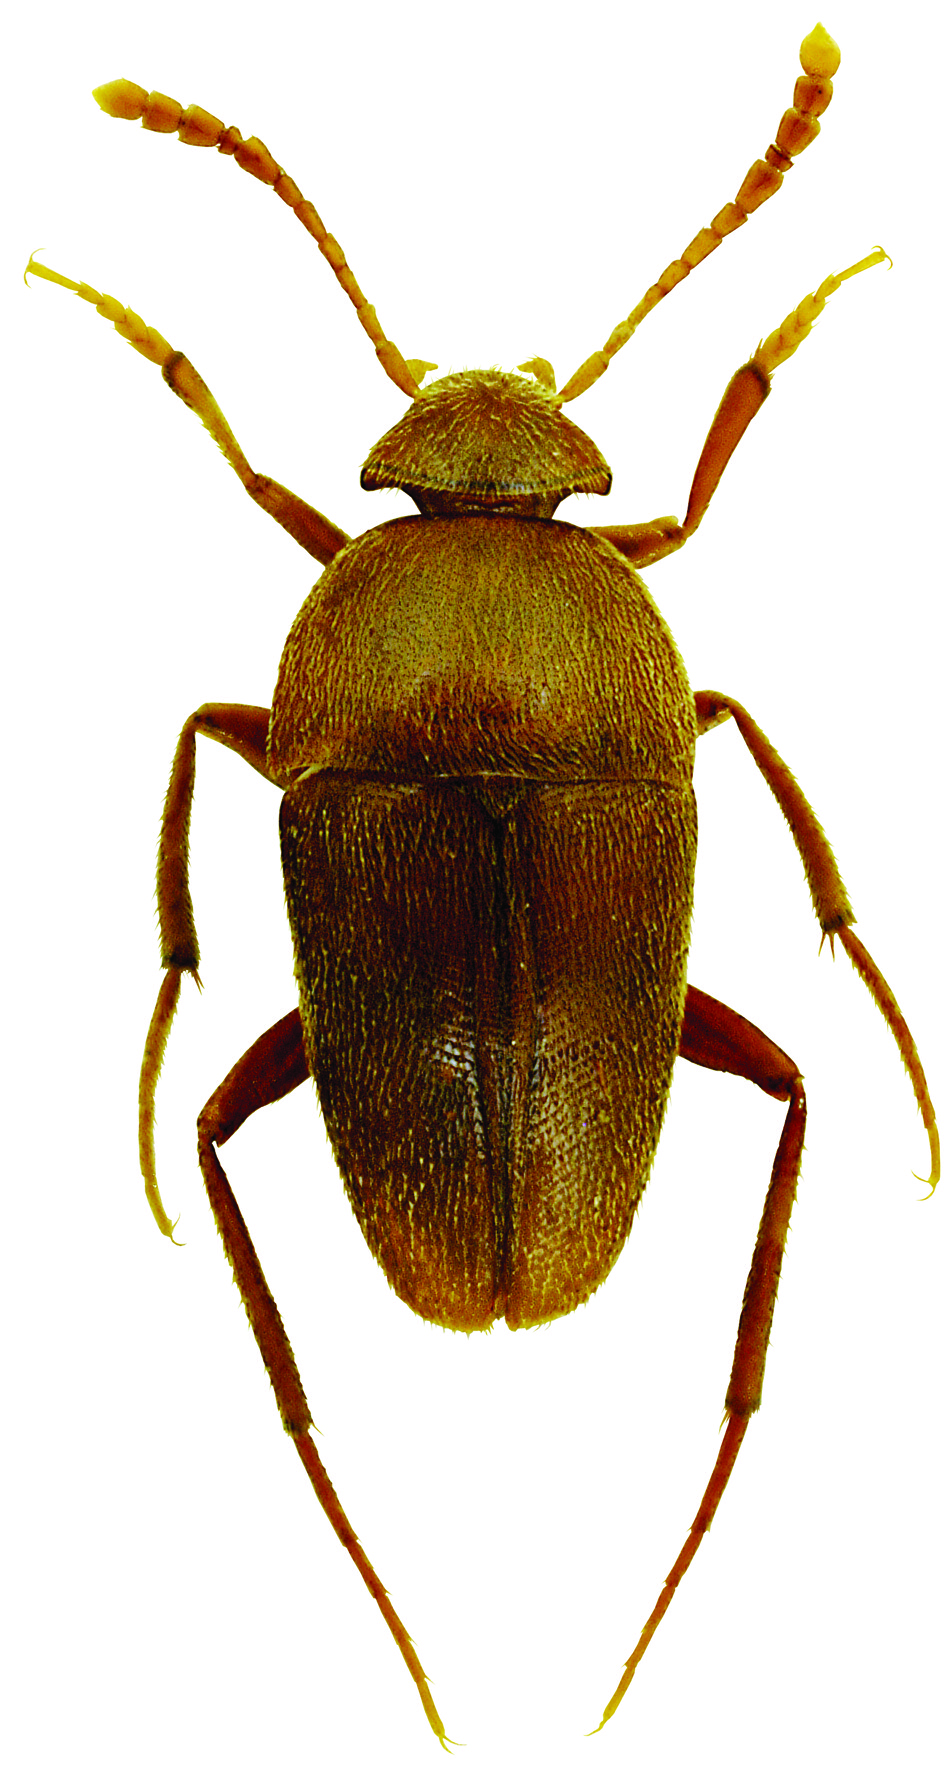 Ptomaphagus troglodytes blas y Vives, 1983 nombre común: no existe tipo: arthropoda / clase: Insecta / Orden: coleoptera / familia: Leiodidae categoría UIcn para españa: VU b1ab(iii)+2ab(iii)